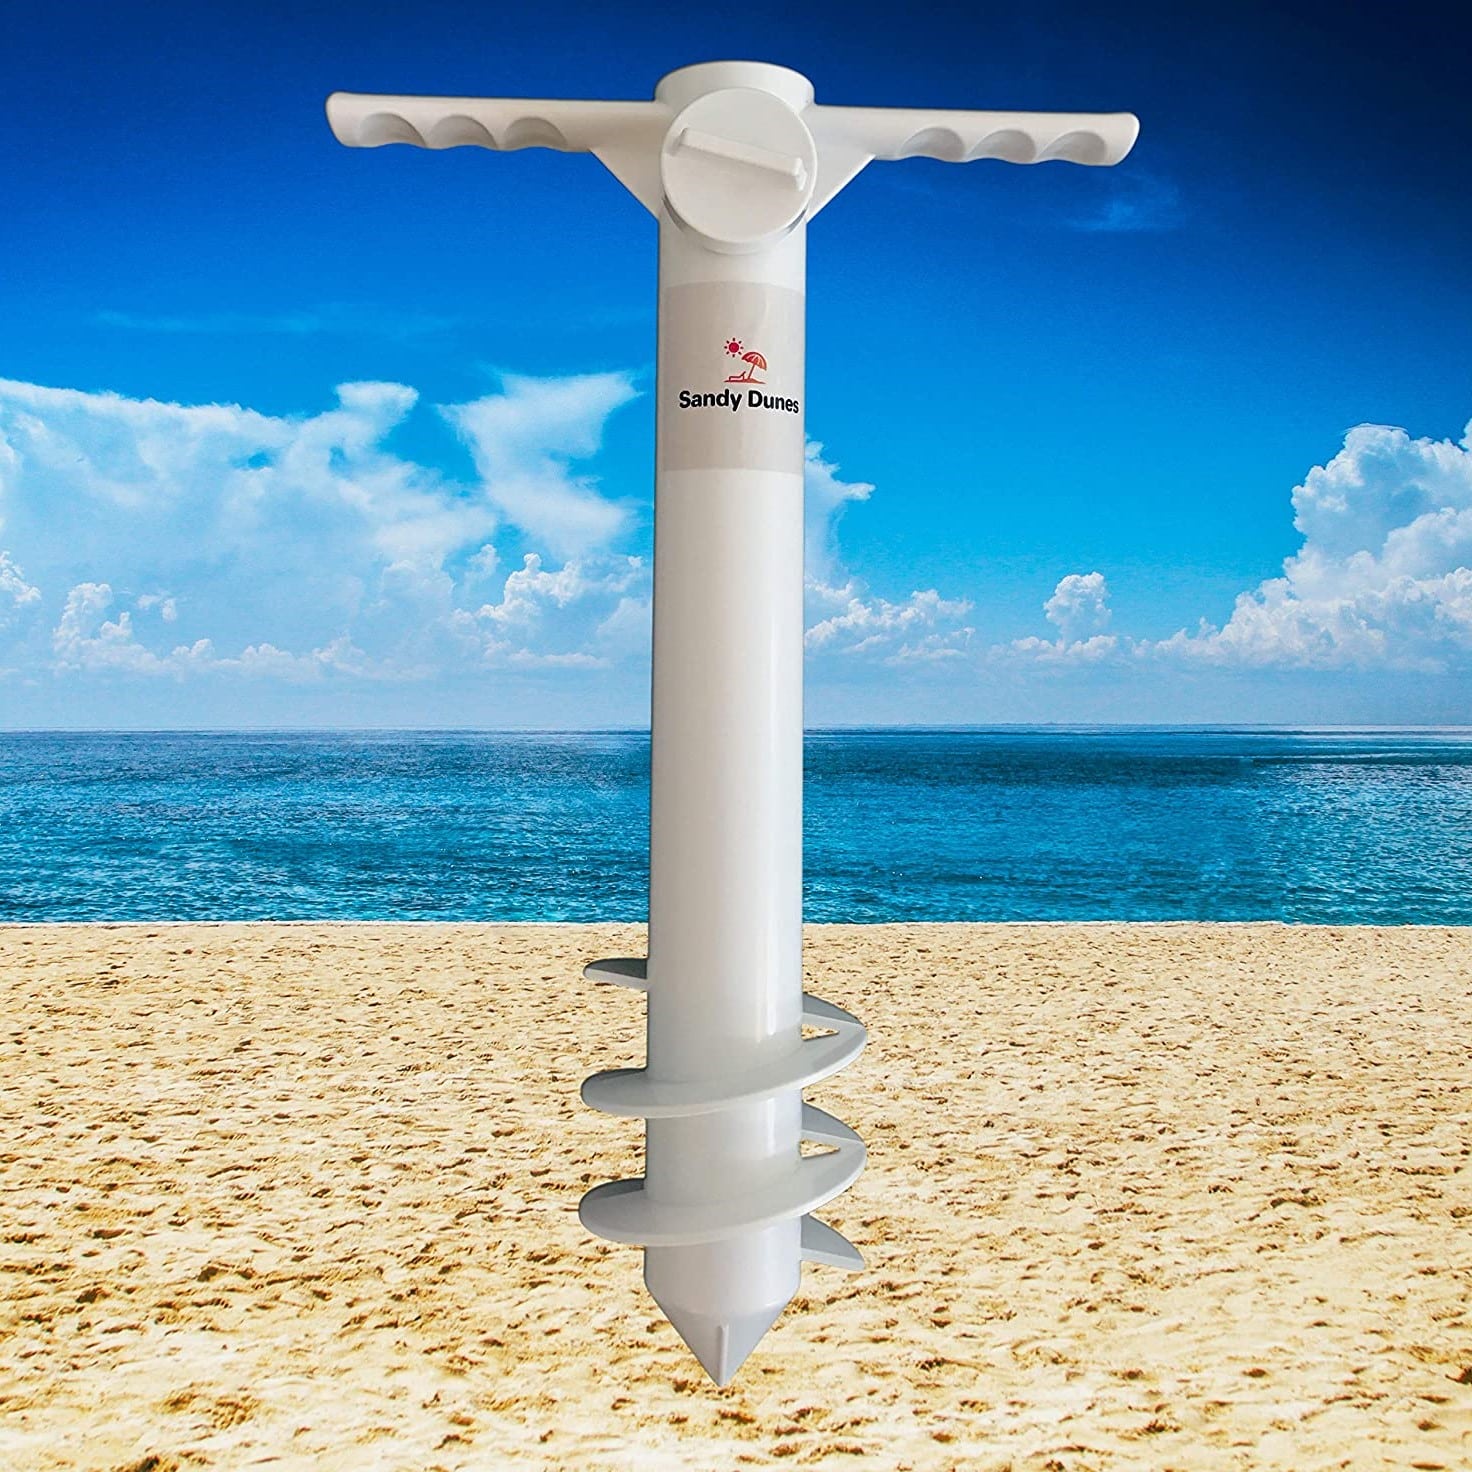 Anchor beach umbrella